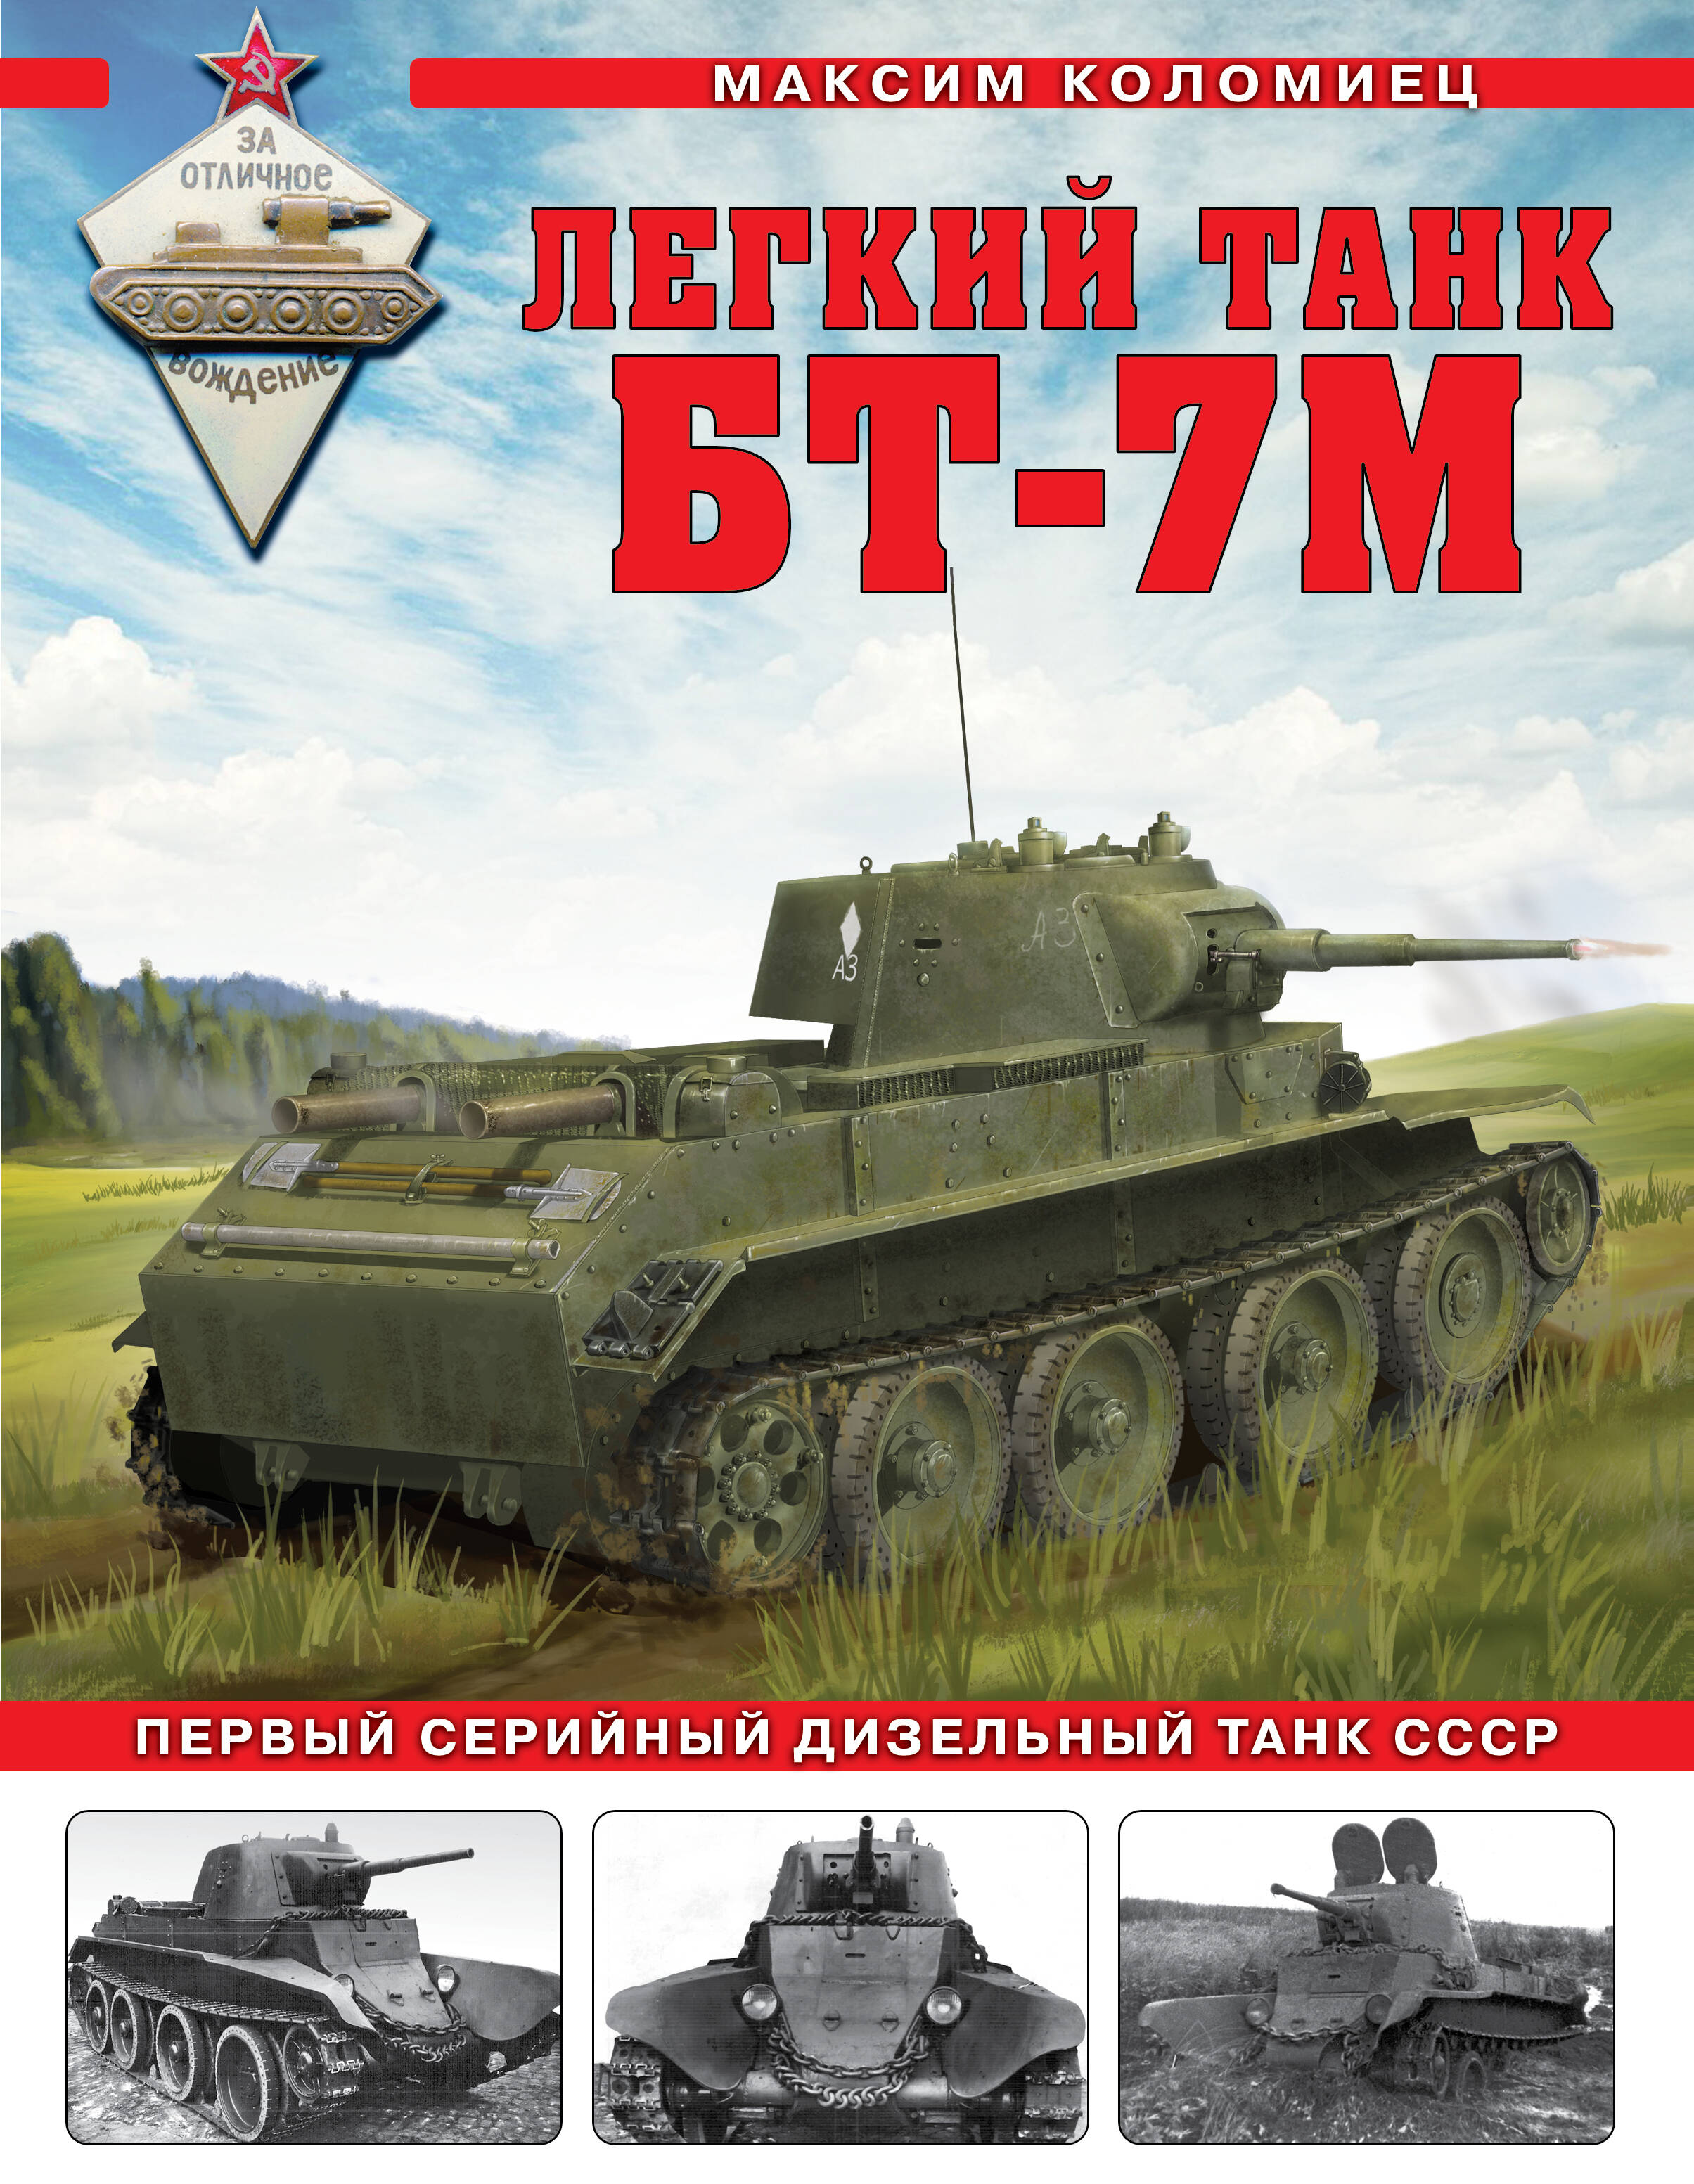 Коломиец Максим Викторович Легкий танк БТ-7М: первый серийный дизельный танк СССР